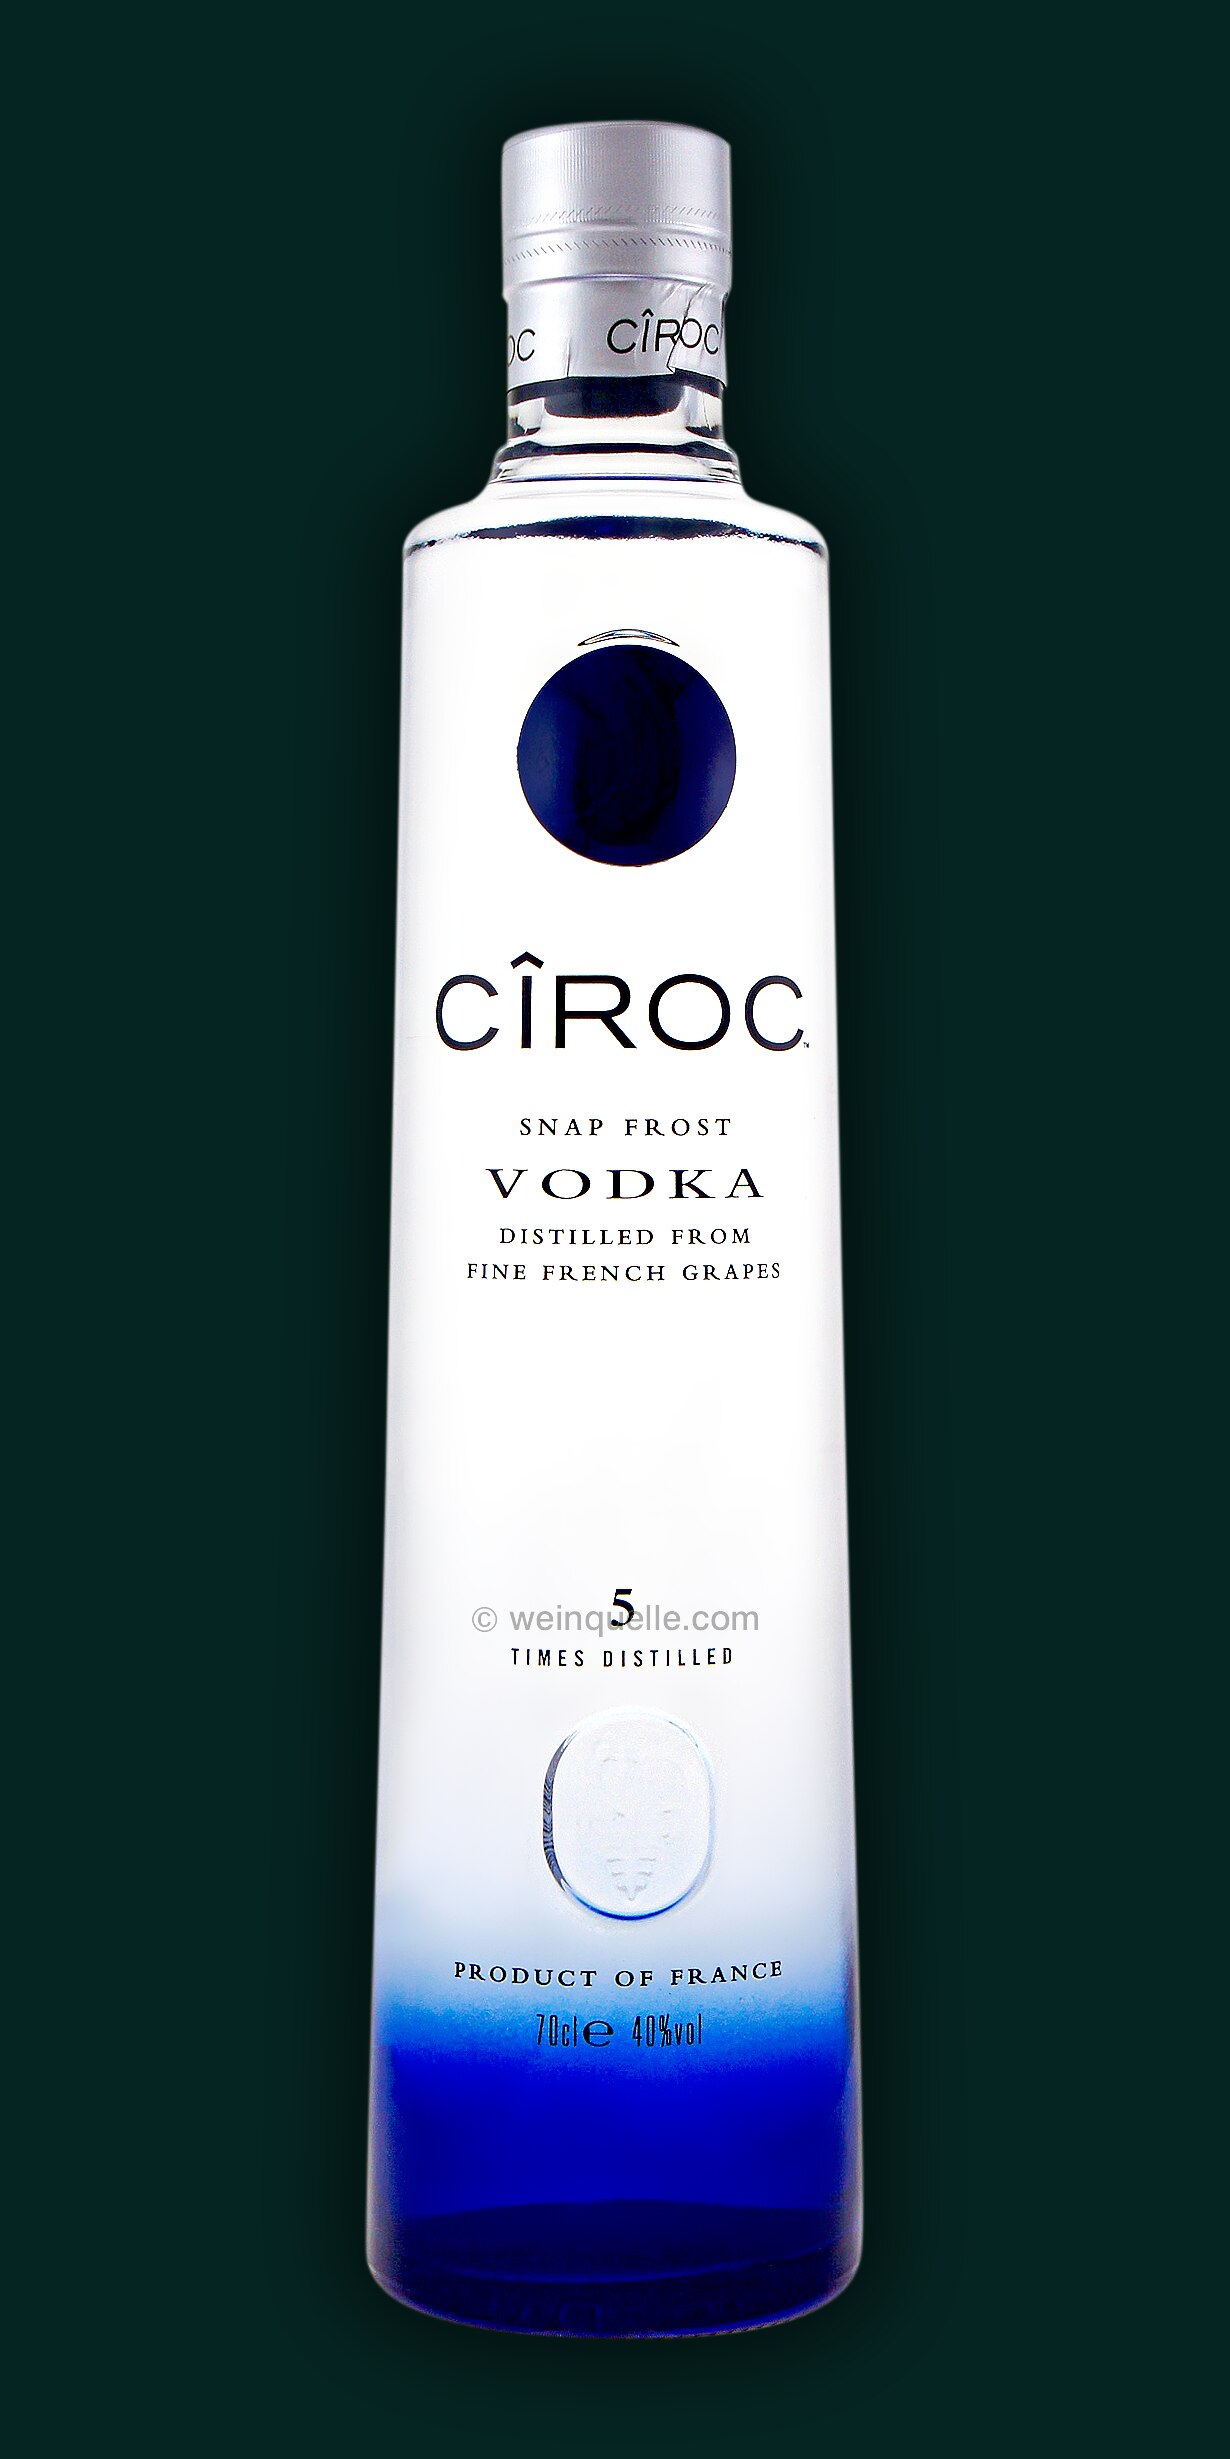 Ciroc Vodka Distilled from Fine French Grapes, 33,90 € - Weinquelle Lühmann